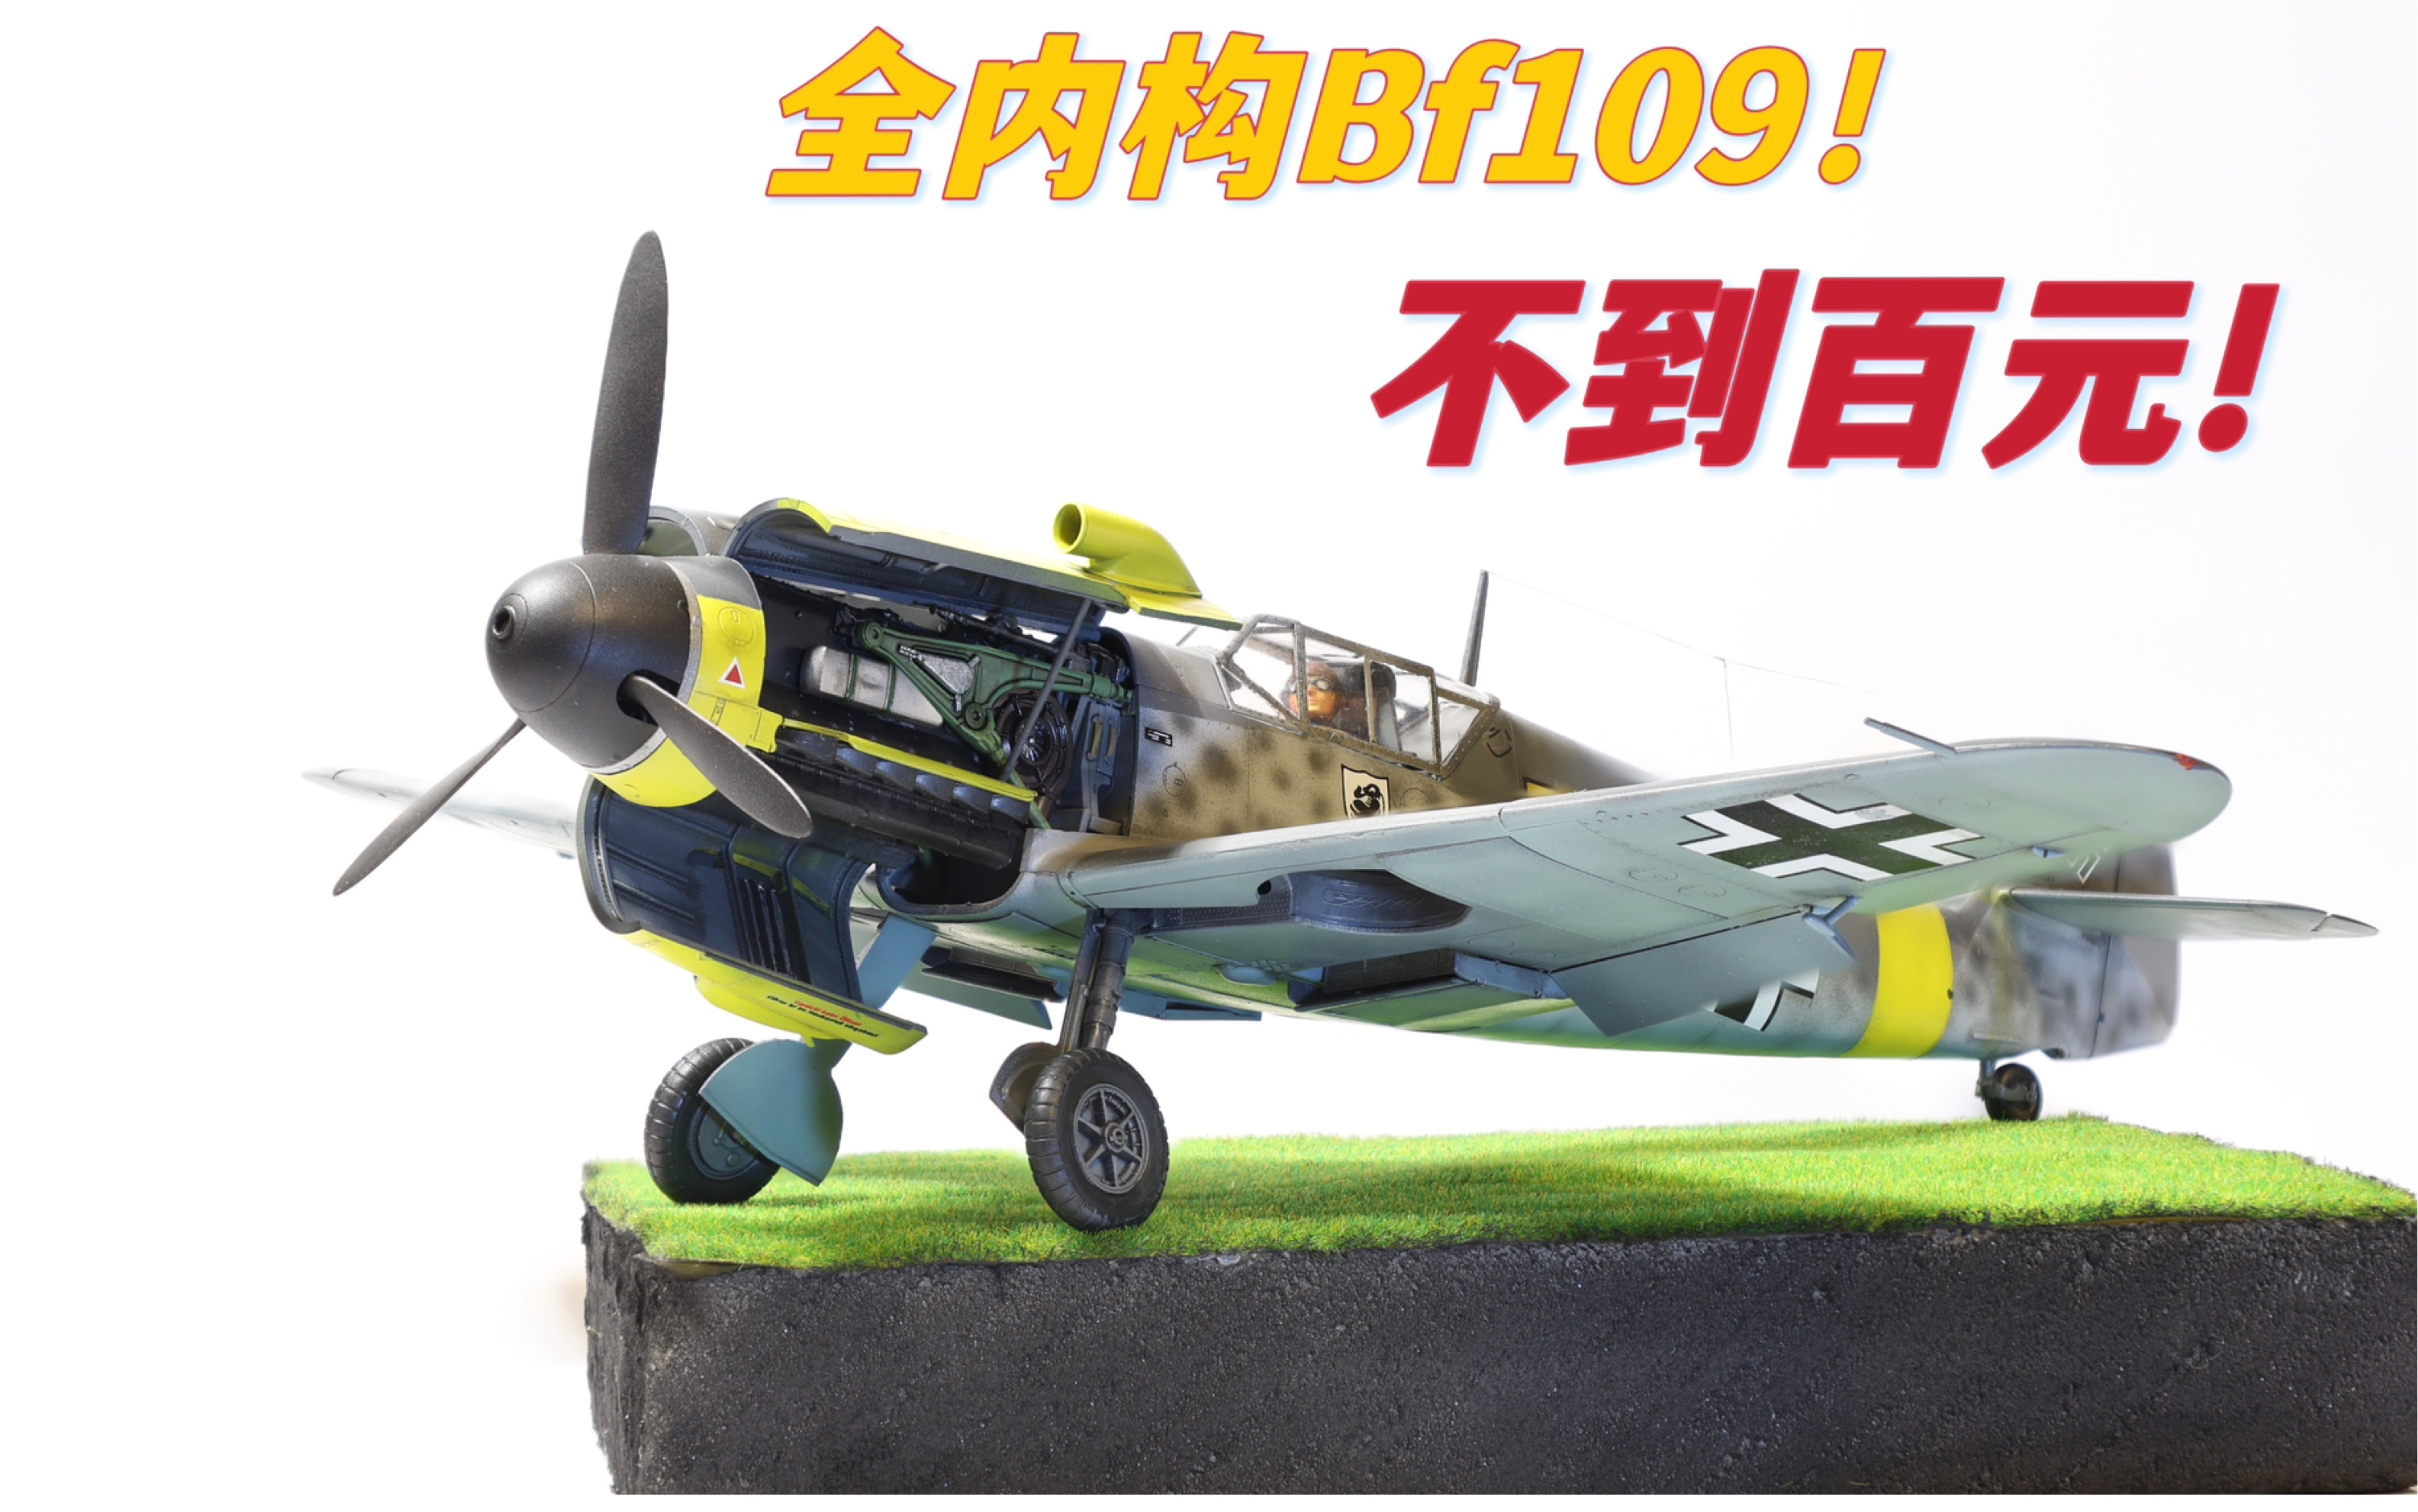 全内购Bf109！不到百元！Zvezda红星1/48 Bf109 f2型简评